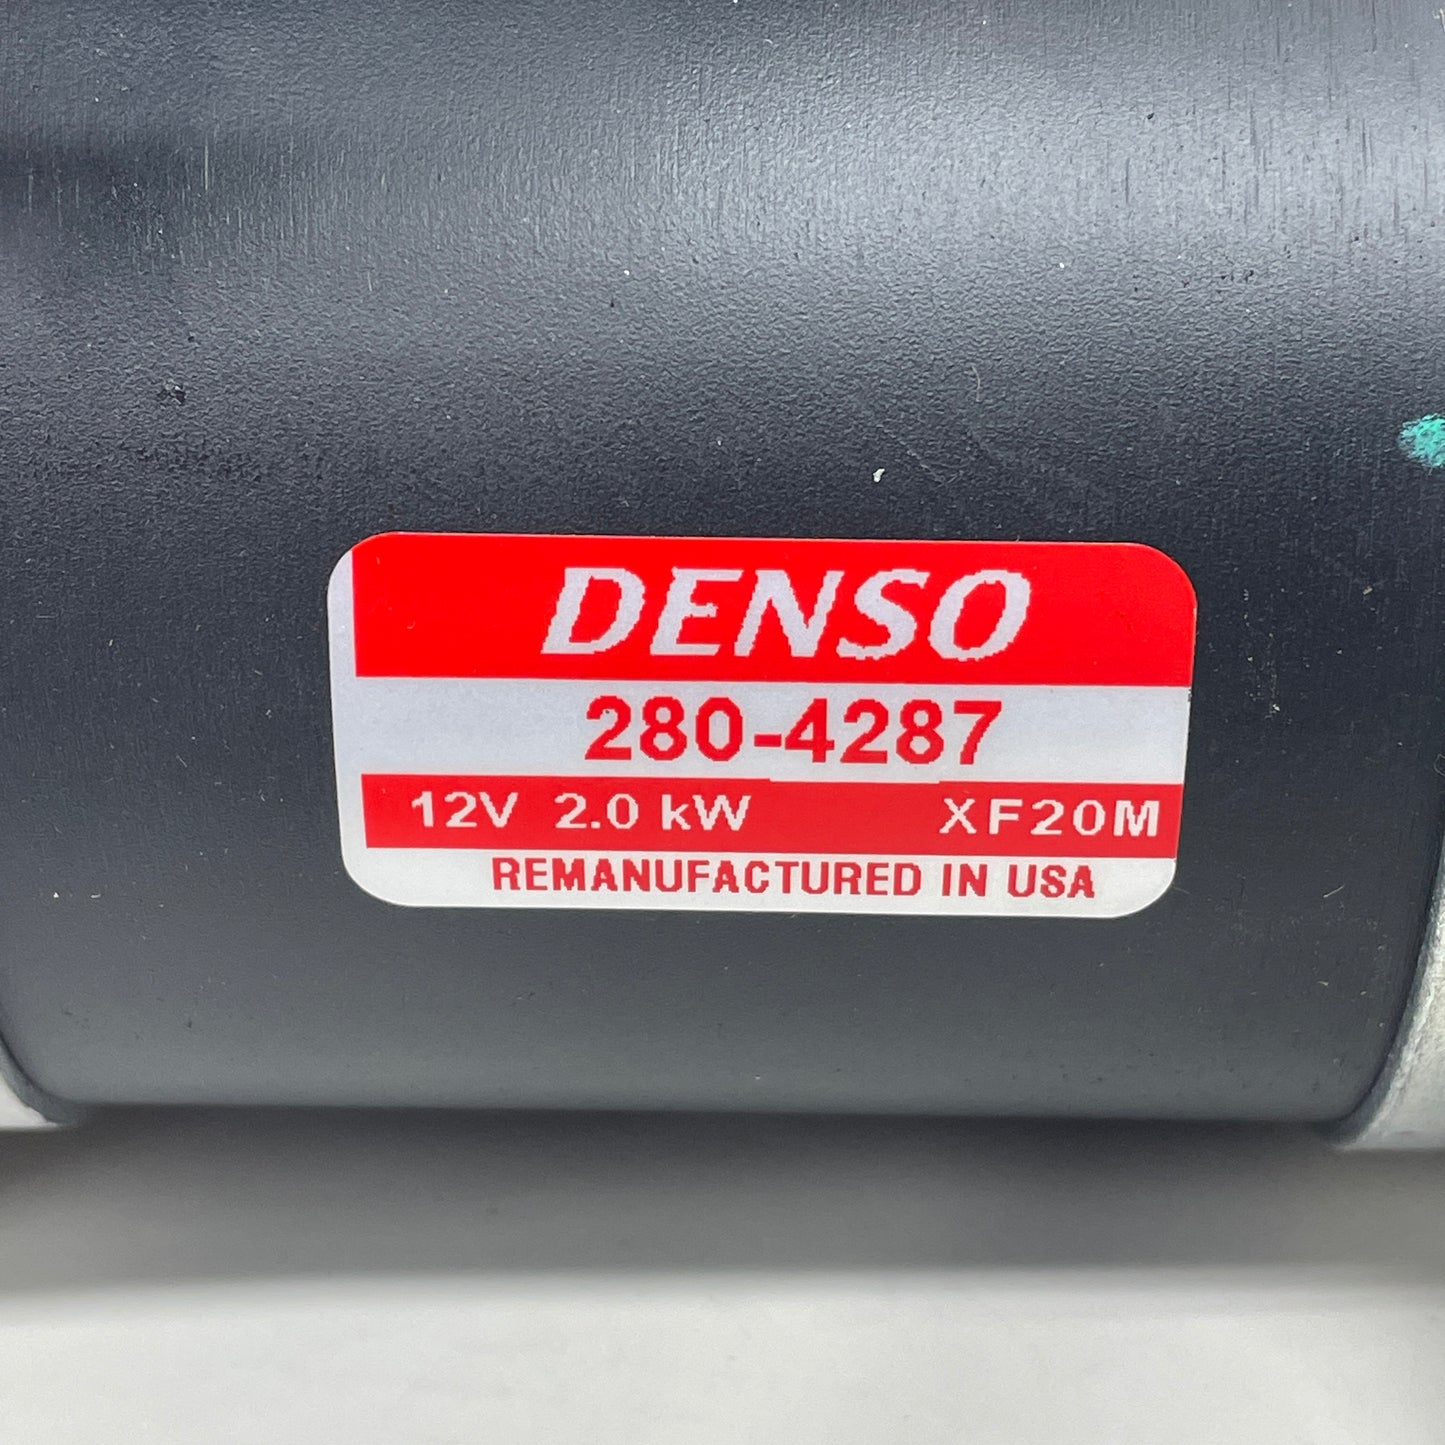 DENSO Starter 12V 2.0 KW 280-4287 (Remanufactured)